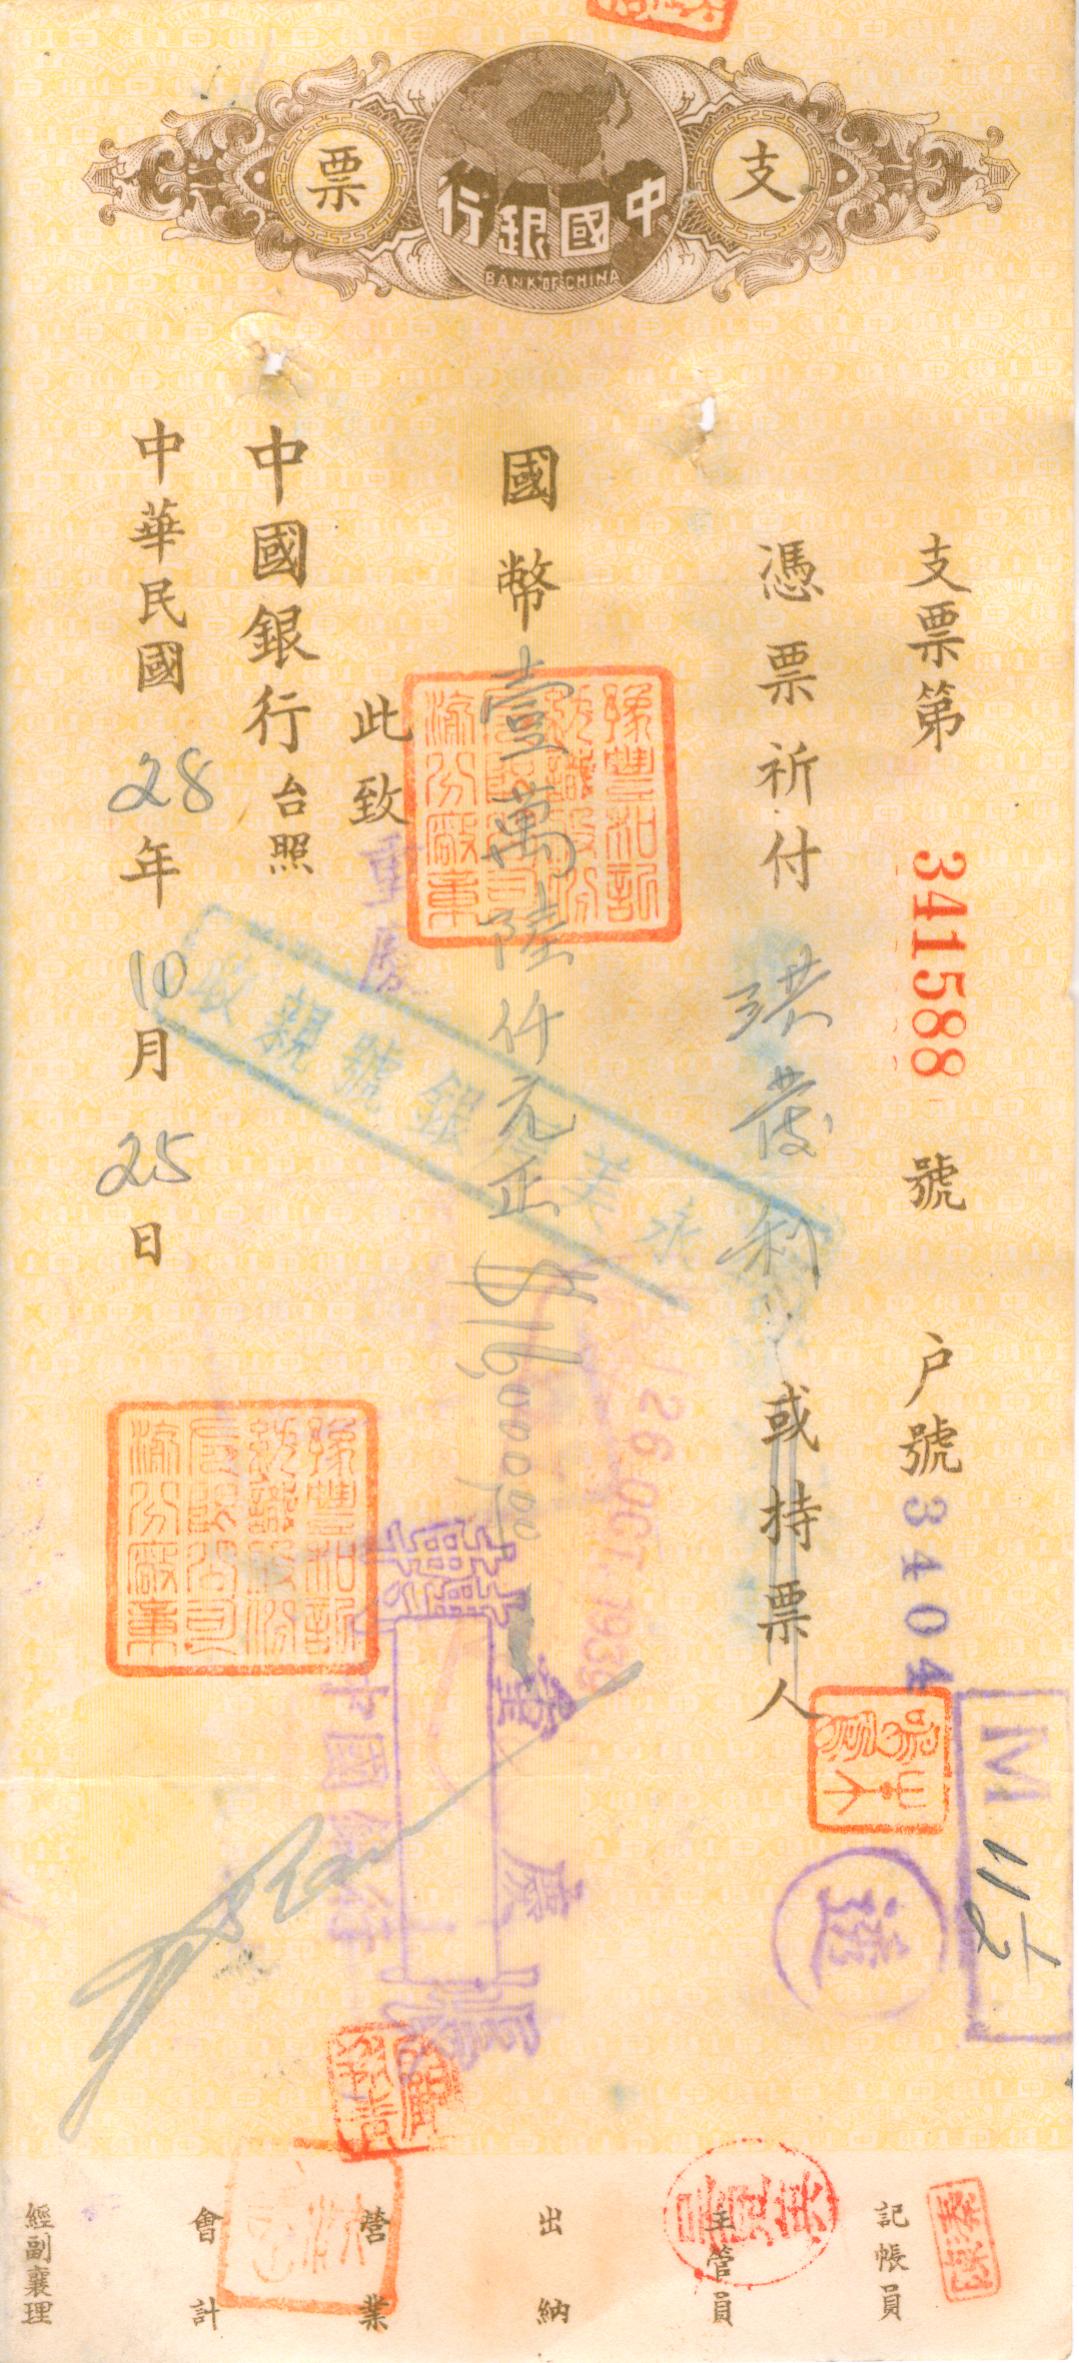 D1061, Check of Bank of China, 1940's